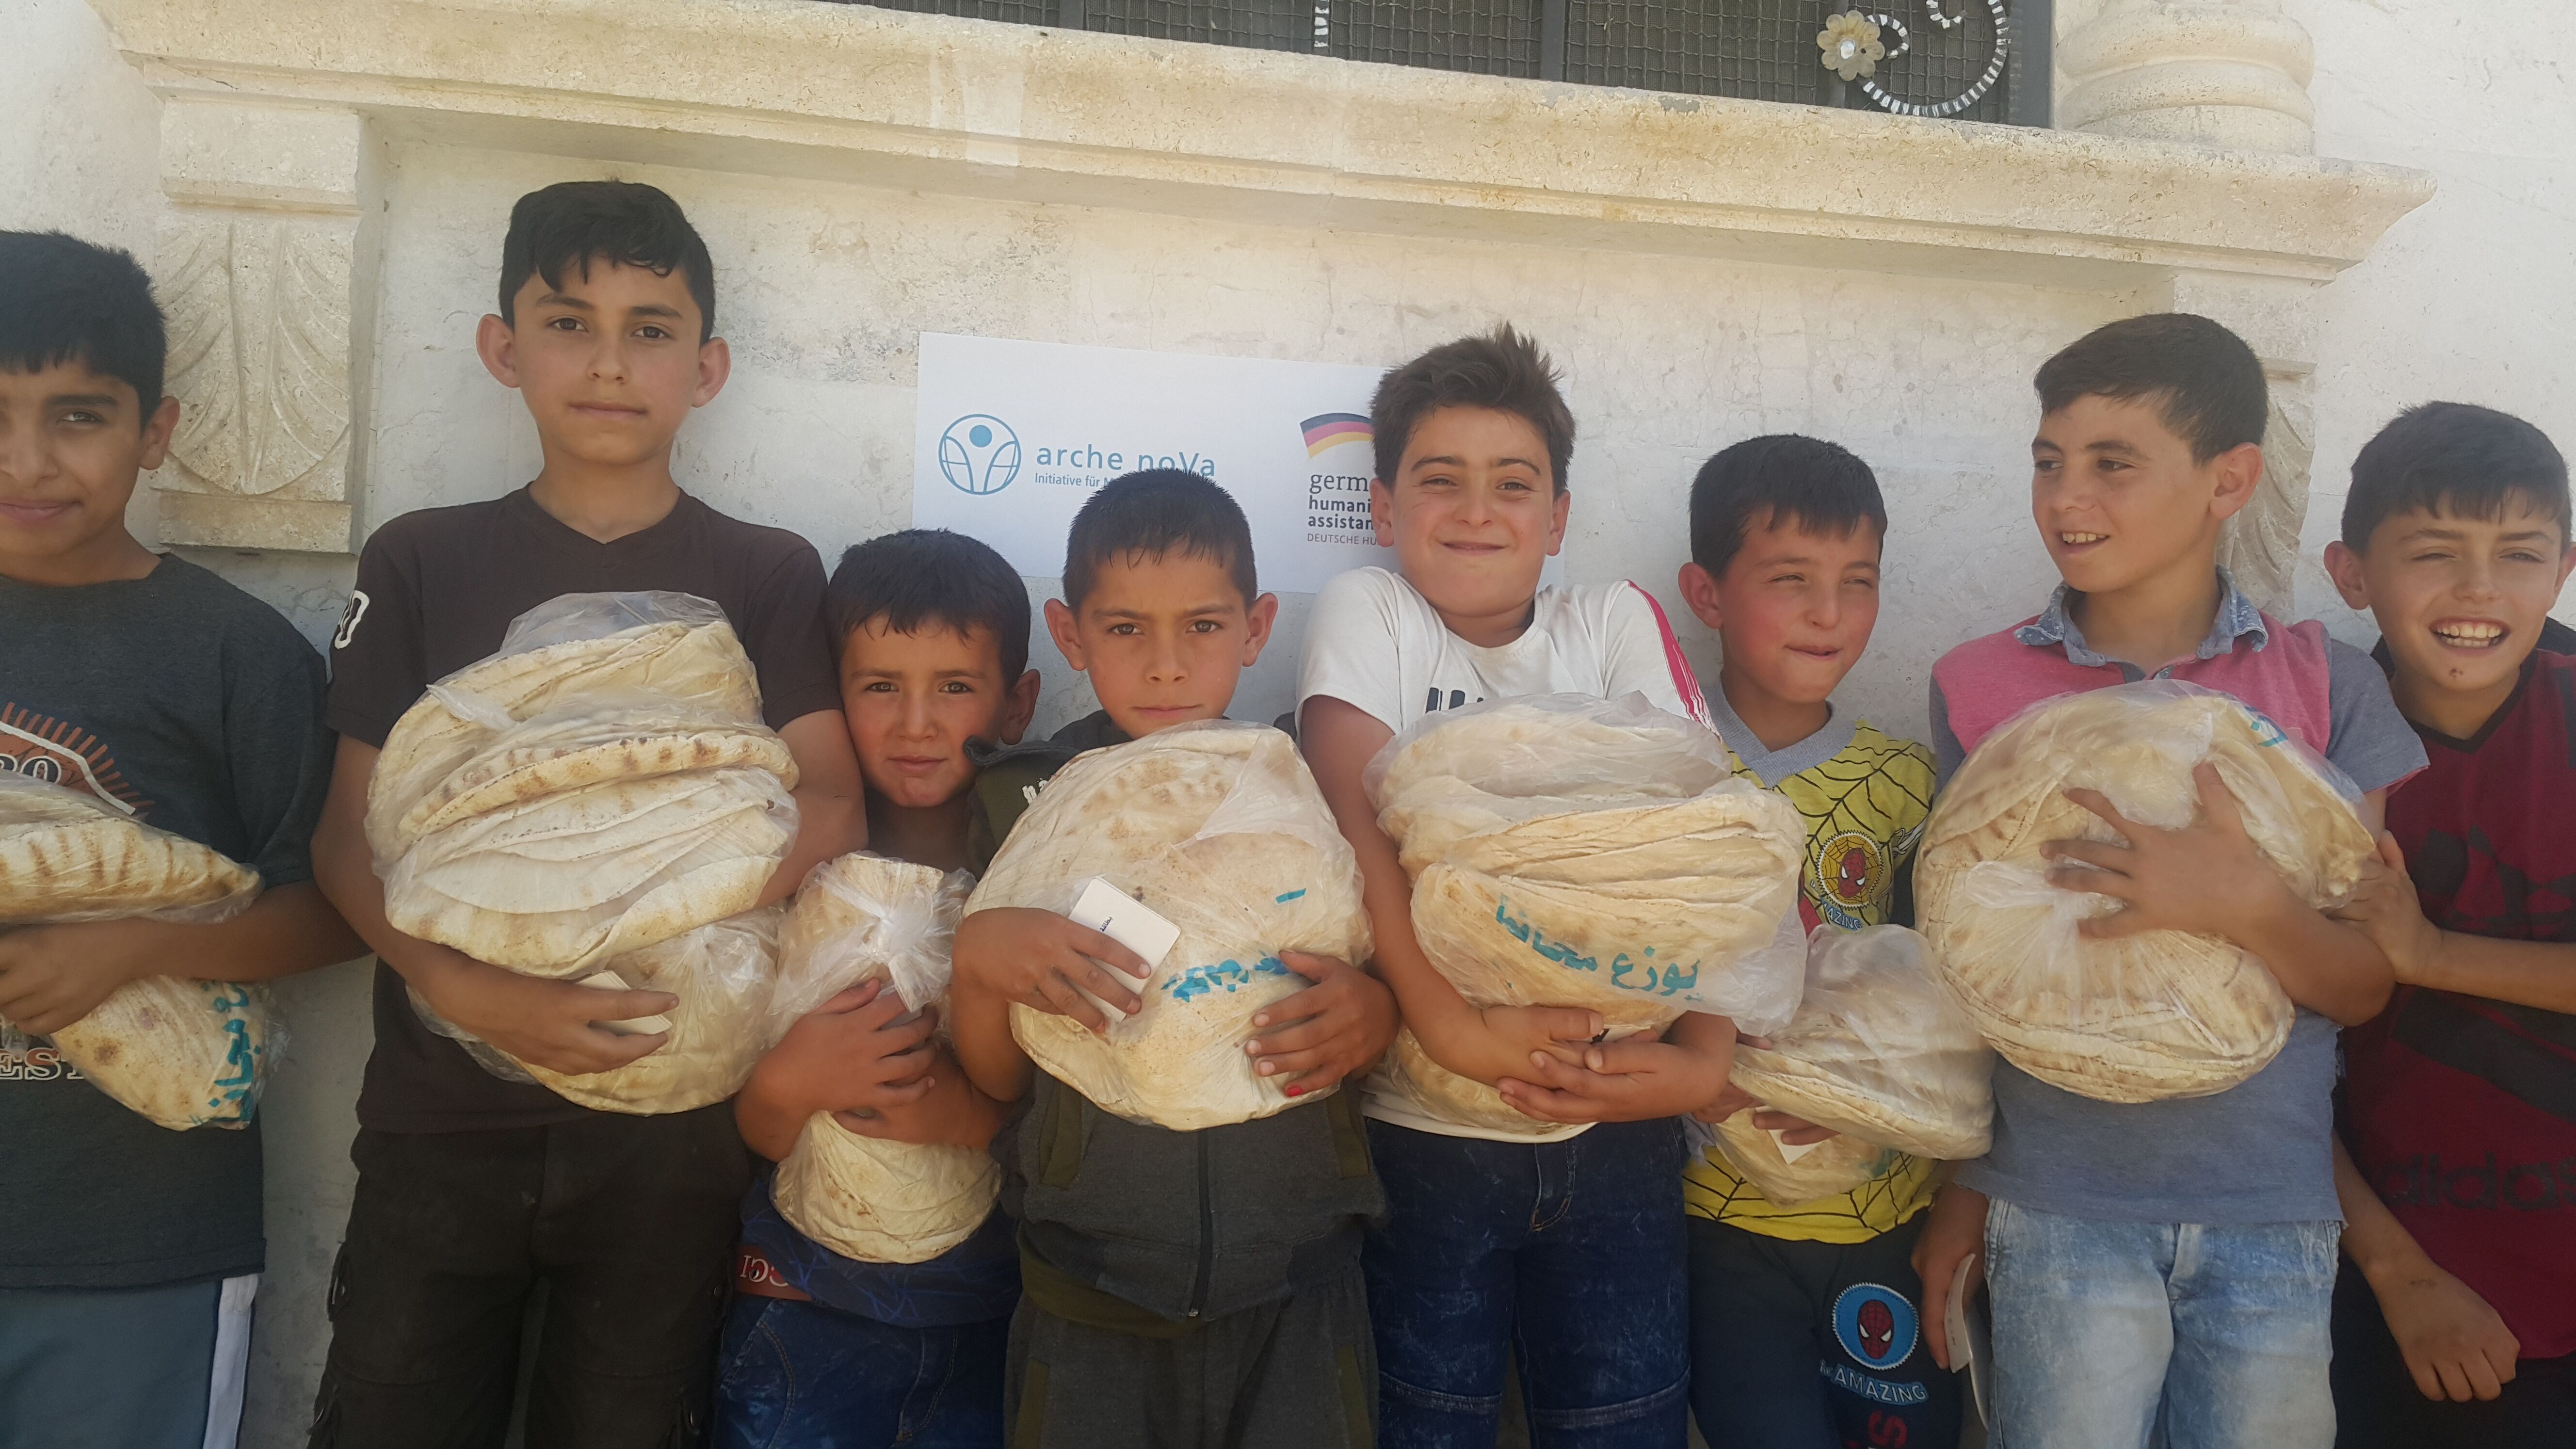 Jungen stehen in einer Reihe an einer Wand mit Brot im Arm